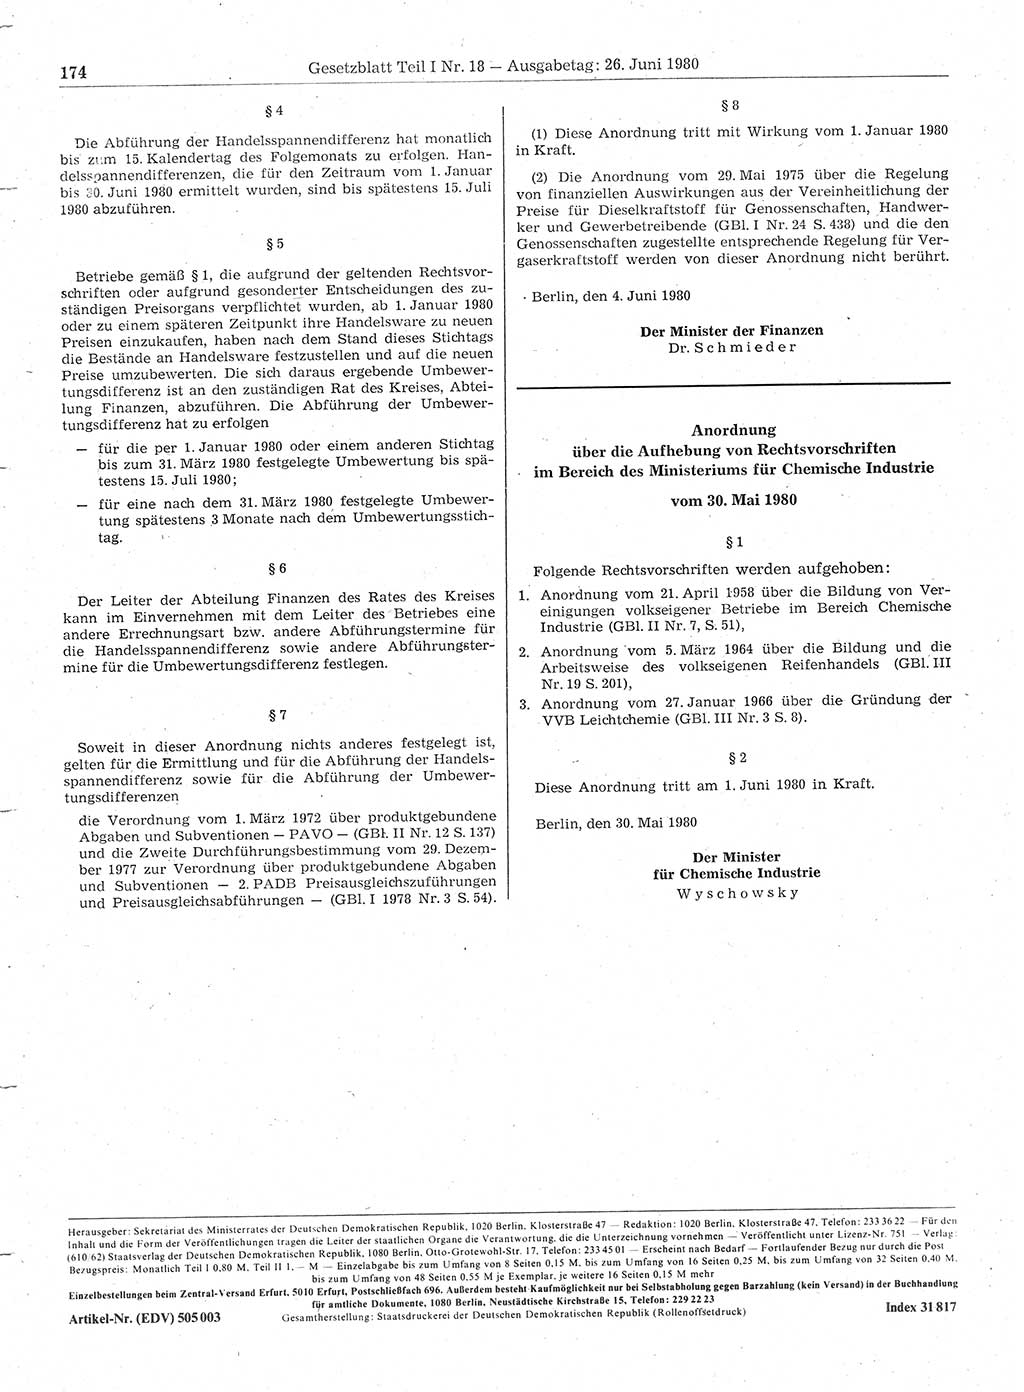 Gesetzblatt (GBl.) der Deutschen Demokratischen Republik (DDR) Teil Ⅰ 1980, Seite 174 (GBl. DDR Ⅰ 1980, S. 174)